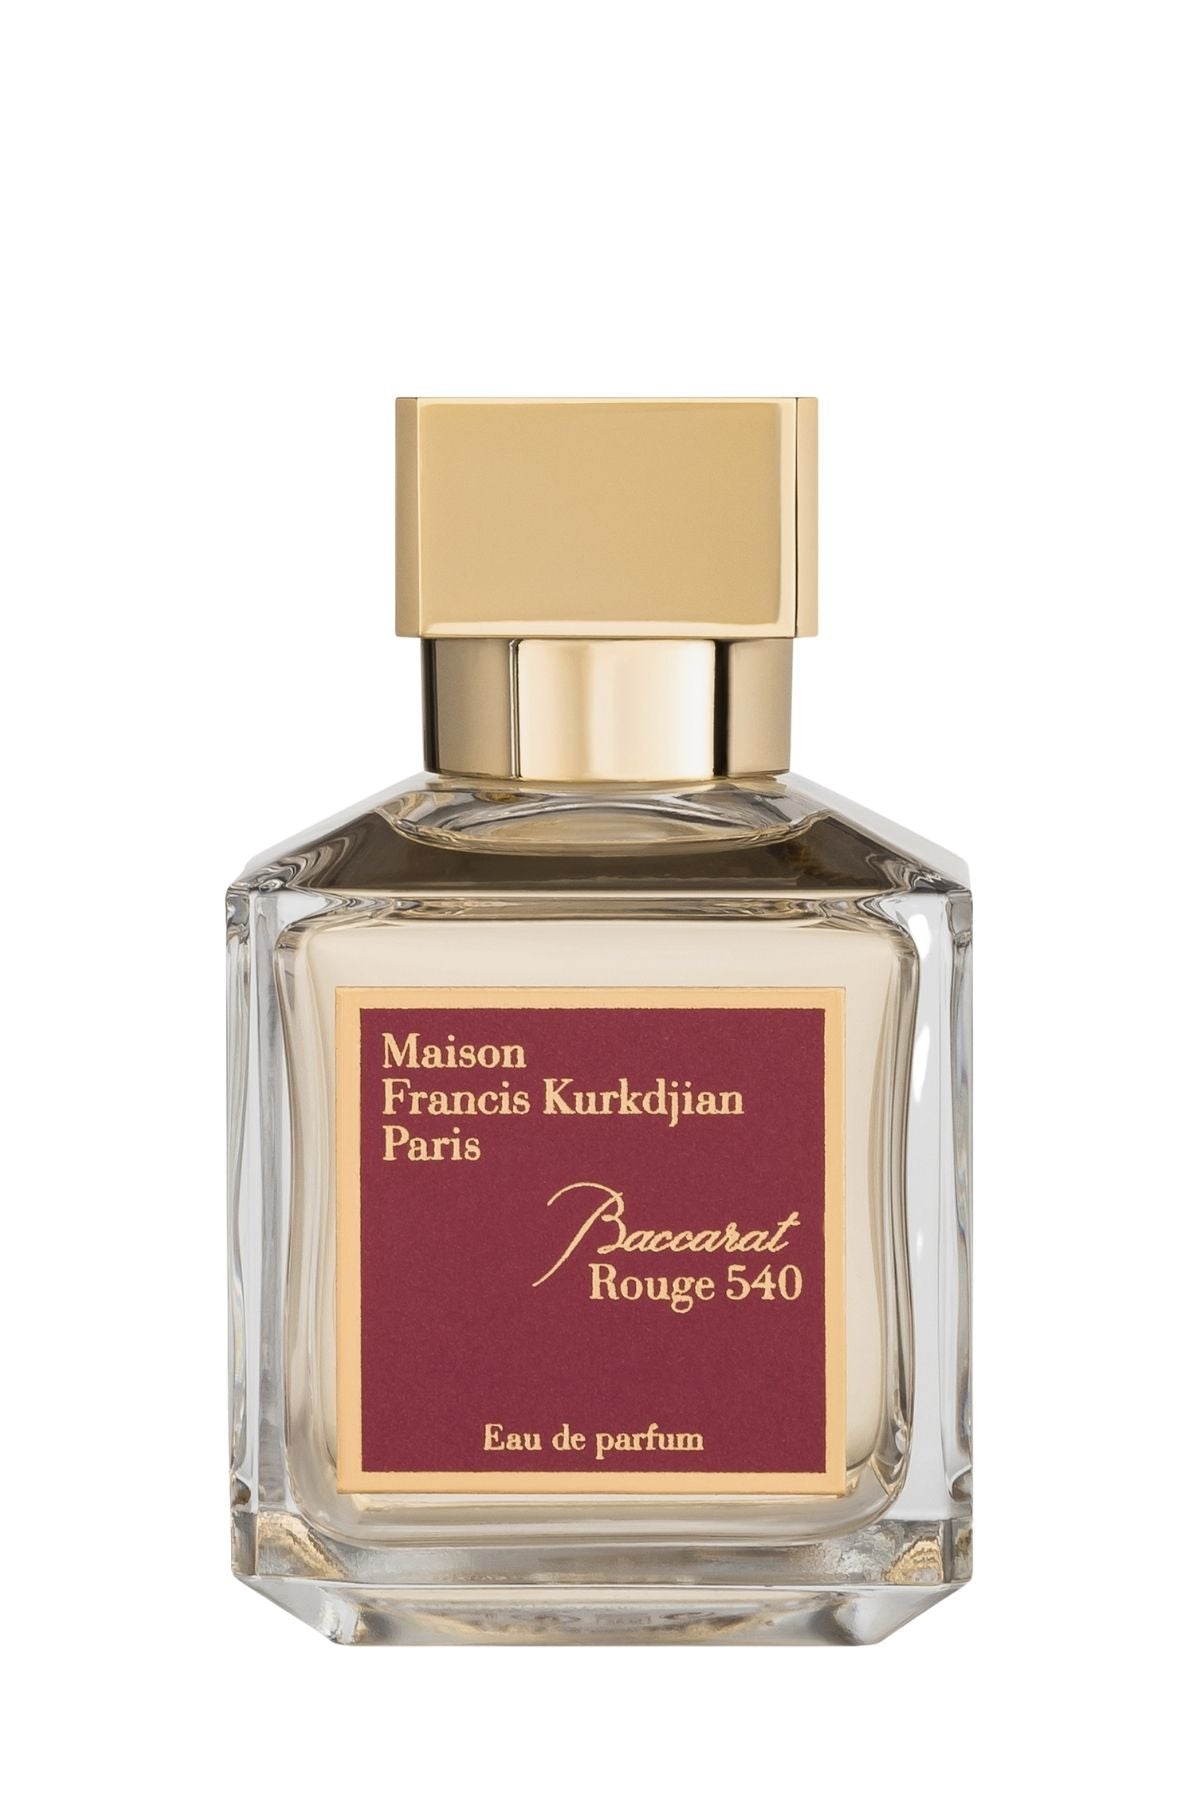 francis kurkdjian parfum